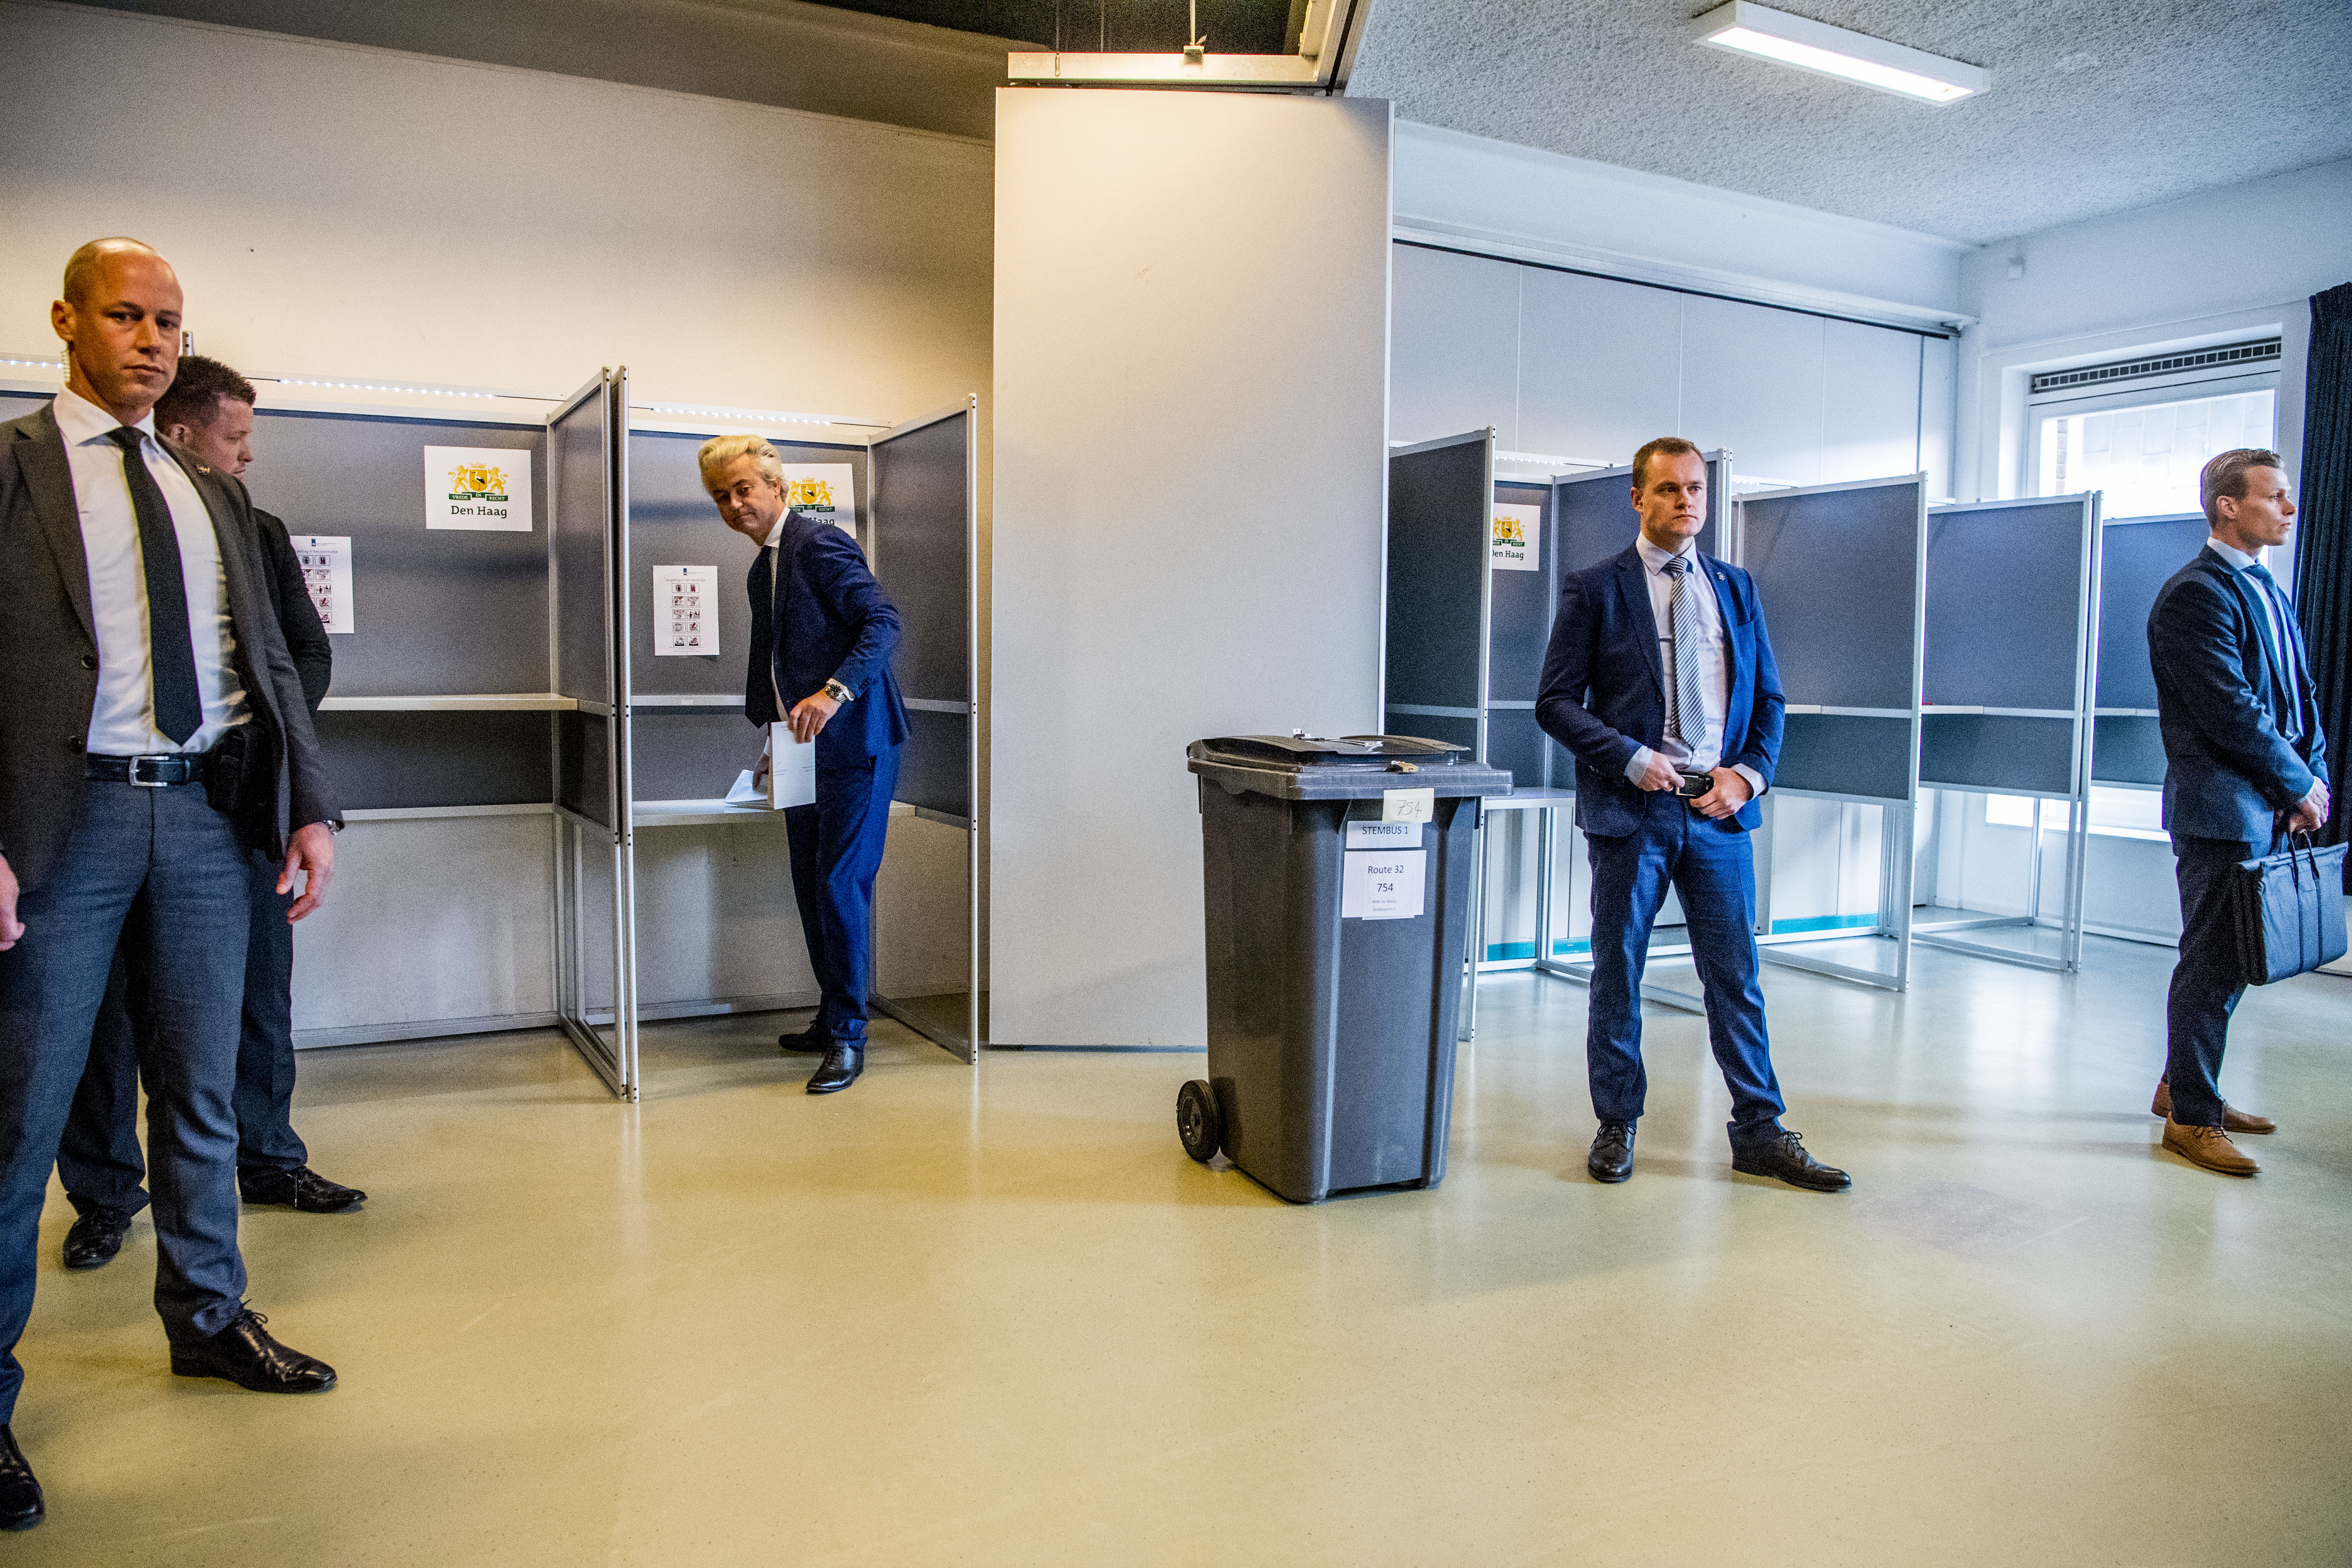 2017-03-15 10:09:23 DEN HAAG - PVV-leider Geert Wilders brengt in Basisschool De Walvis zijn stem uit voor de Tweede Kamerverkiezingen. ANP ROBIN UTRECHT